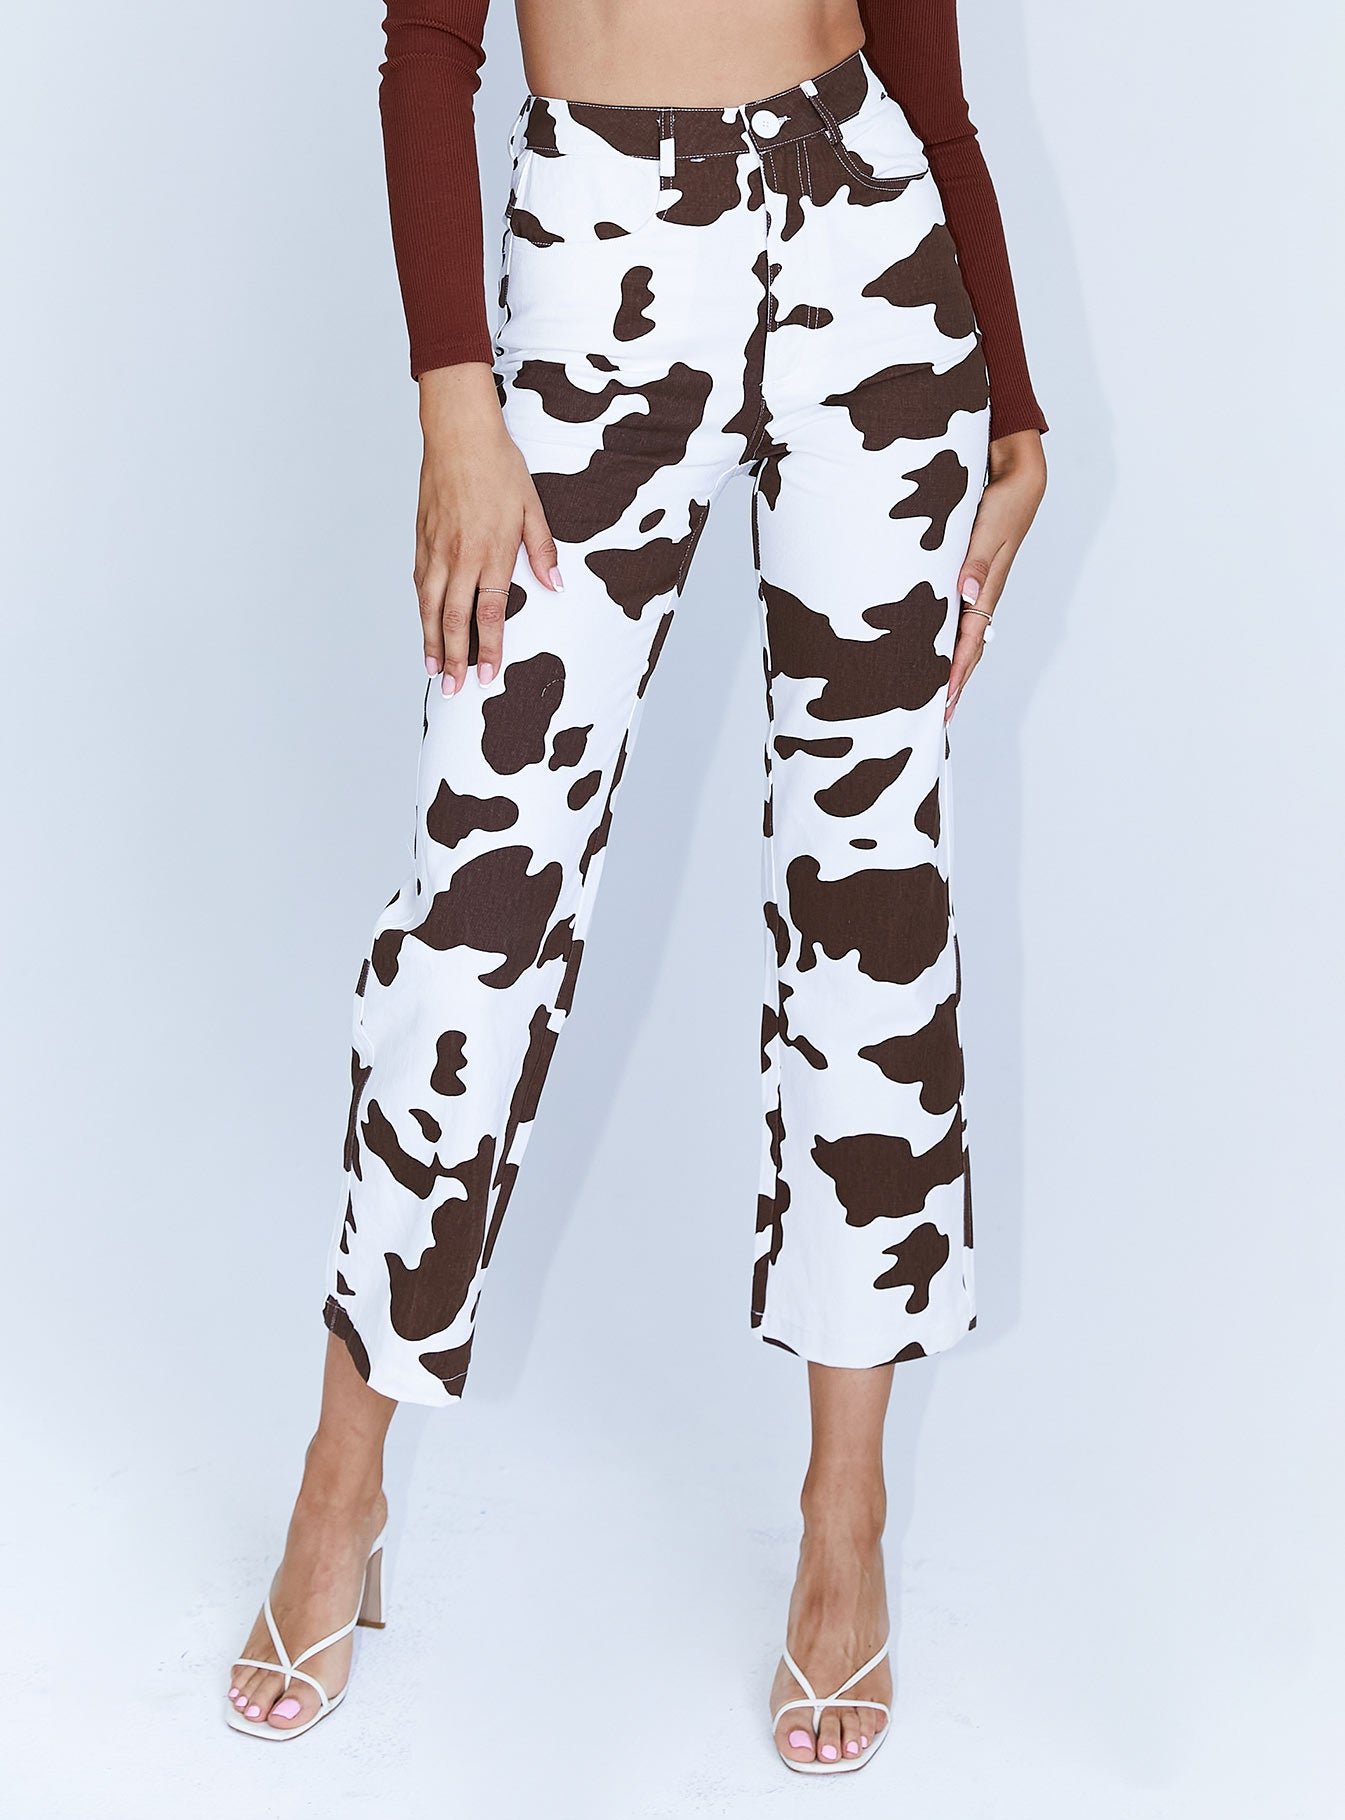 Cow Print Pants Women | Cow Print Stacked Pants | Cow Print Trousers | Cow  Fashion Pants - Pants & Capris - Aliexpress